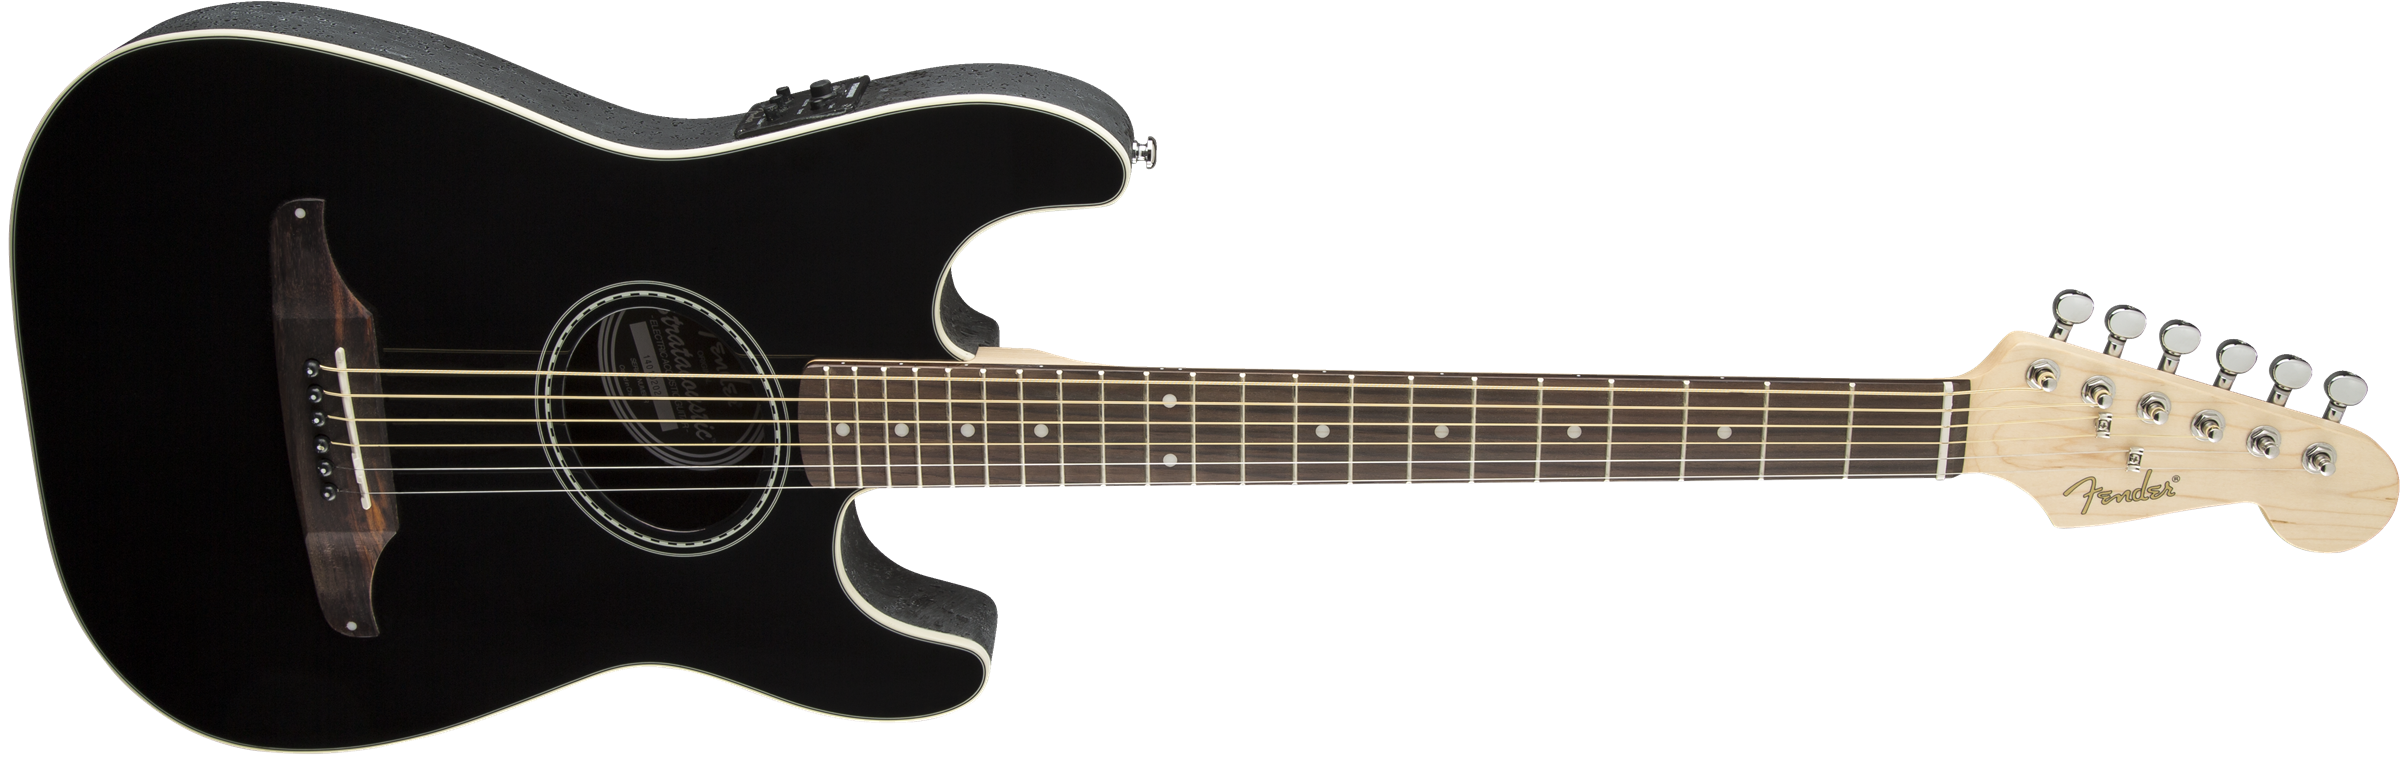 Fender Stratacoustic Standard (wal) - Black - Guitarra acústica & electro - Variation 5